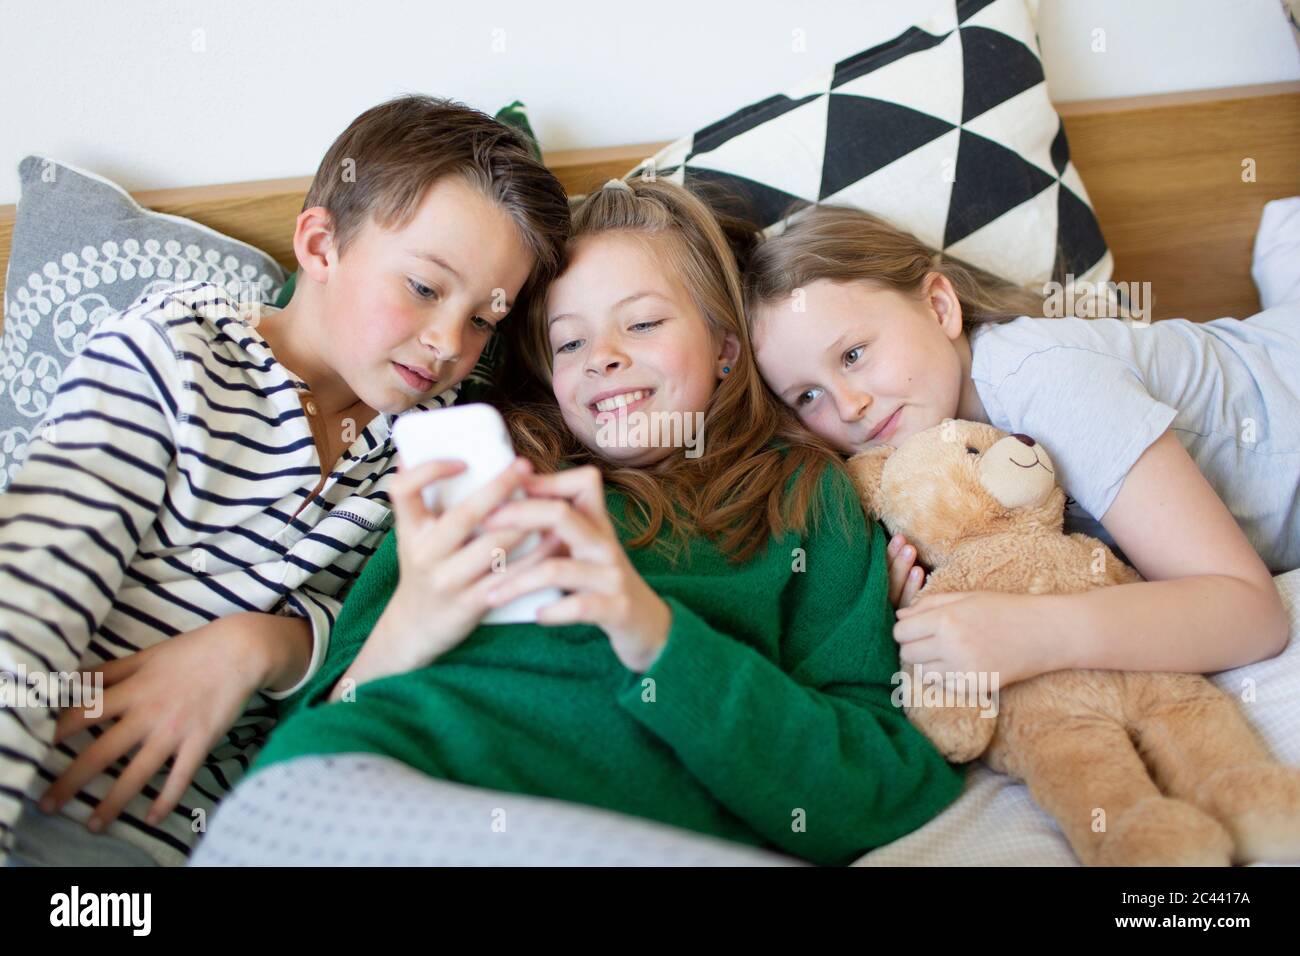 Gruppenbild von drei Kindern, die zusammen auf dem Bett liegen und auf das Handy blicken Stockfoto